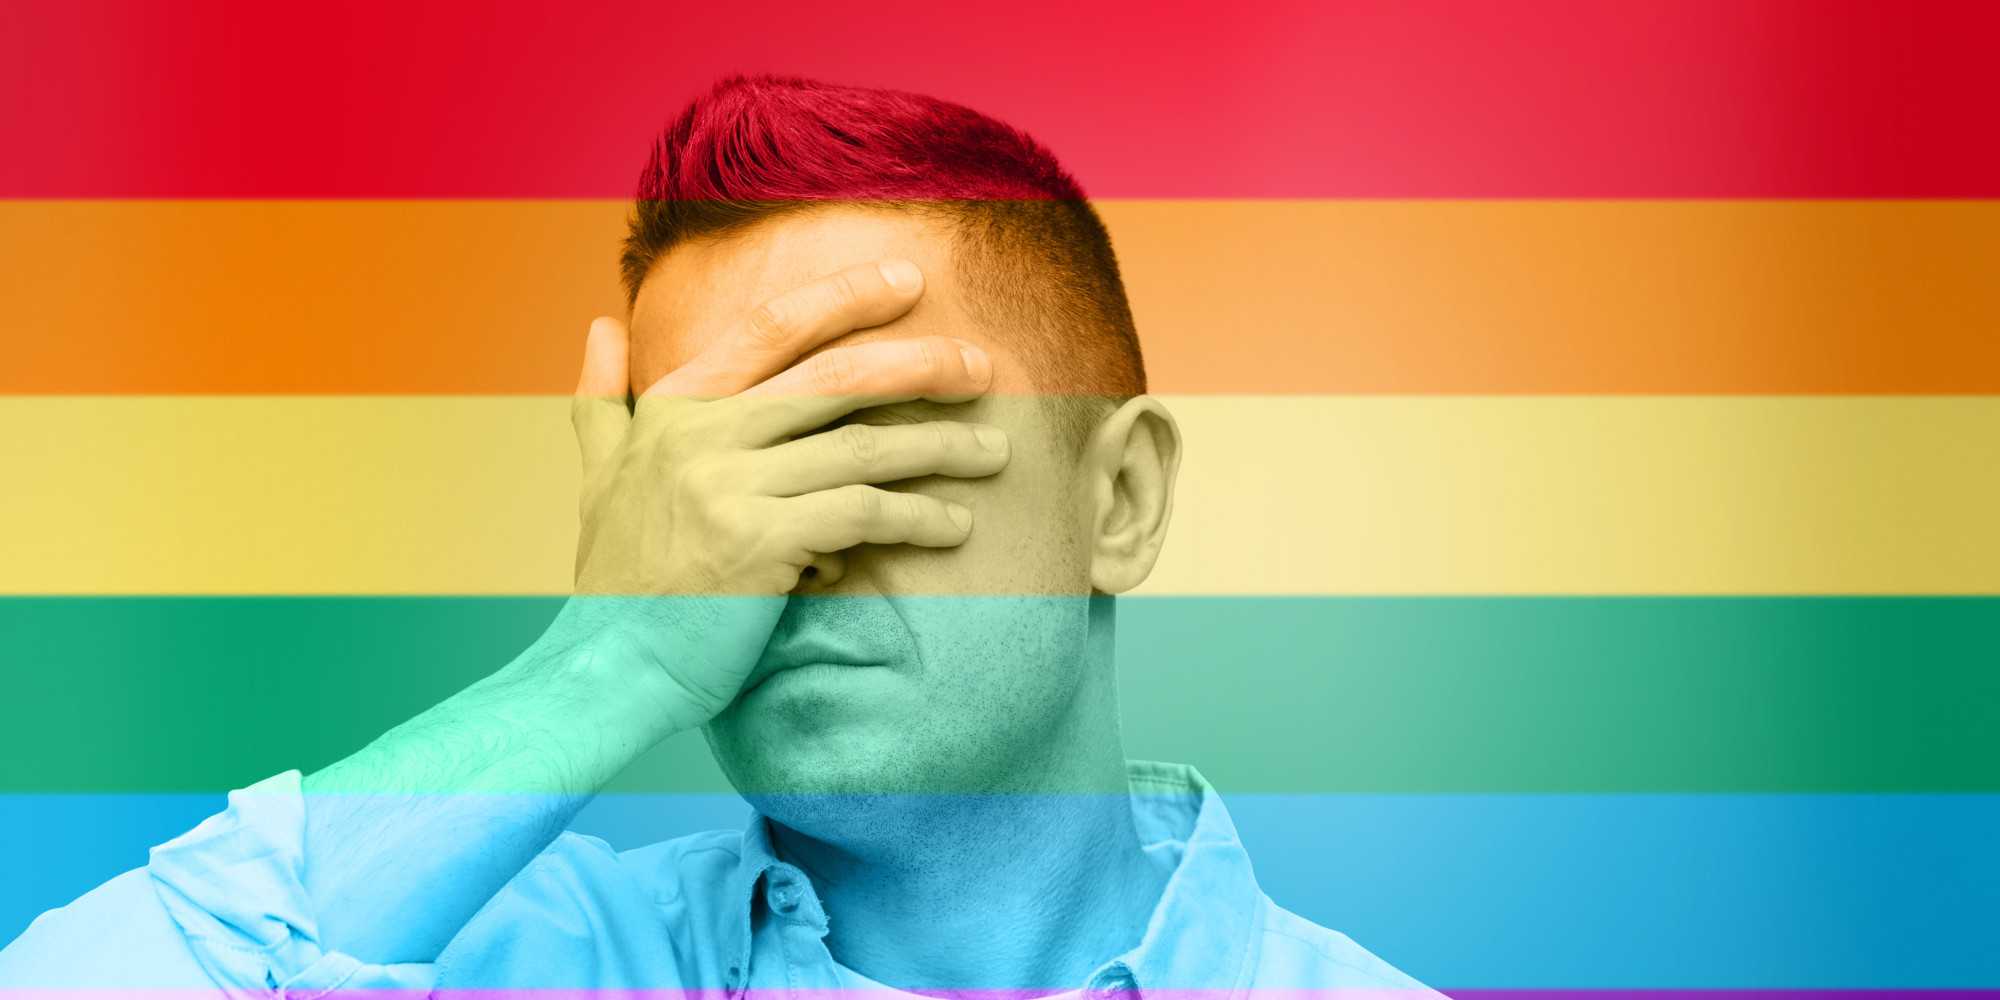 Гомофобия - что это такое, и почему это плохо?